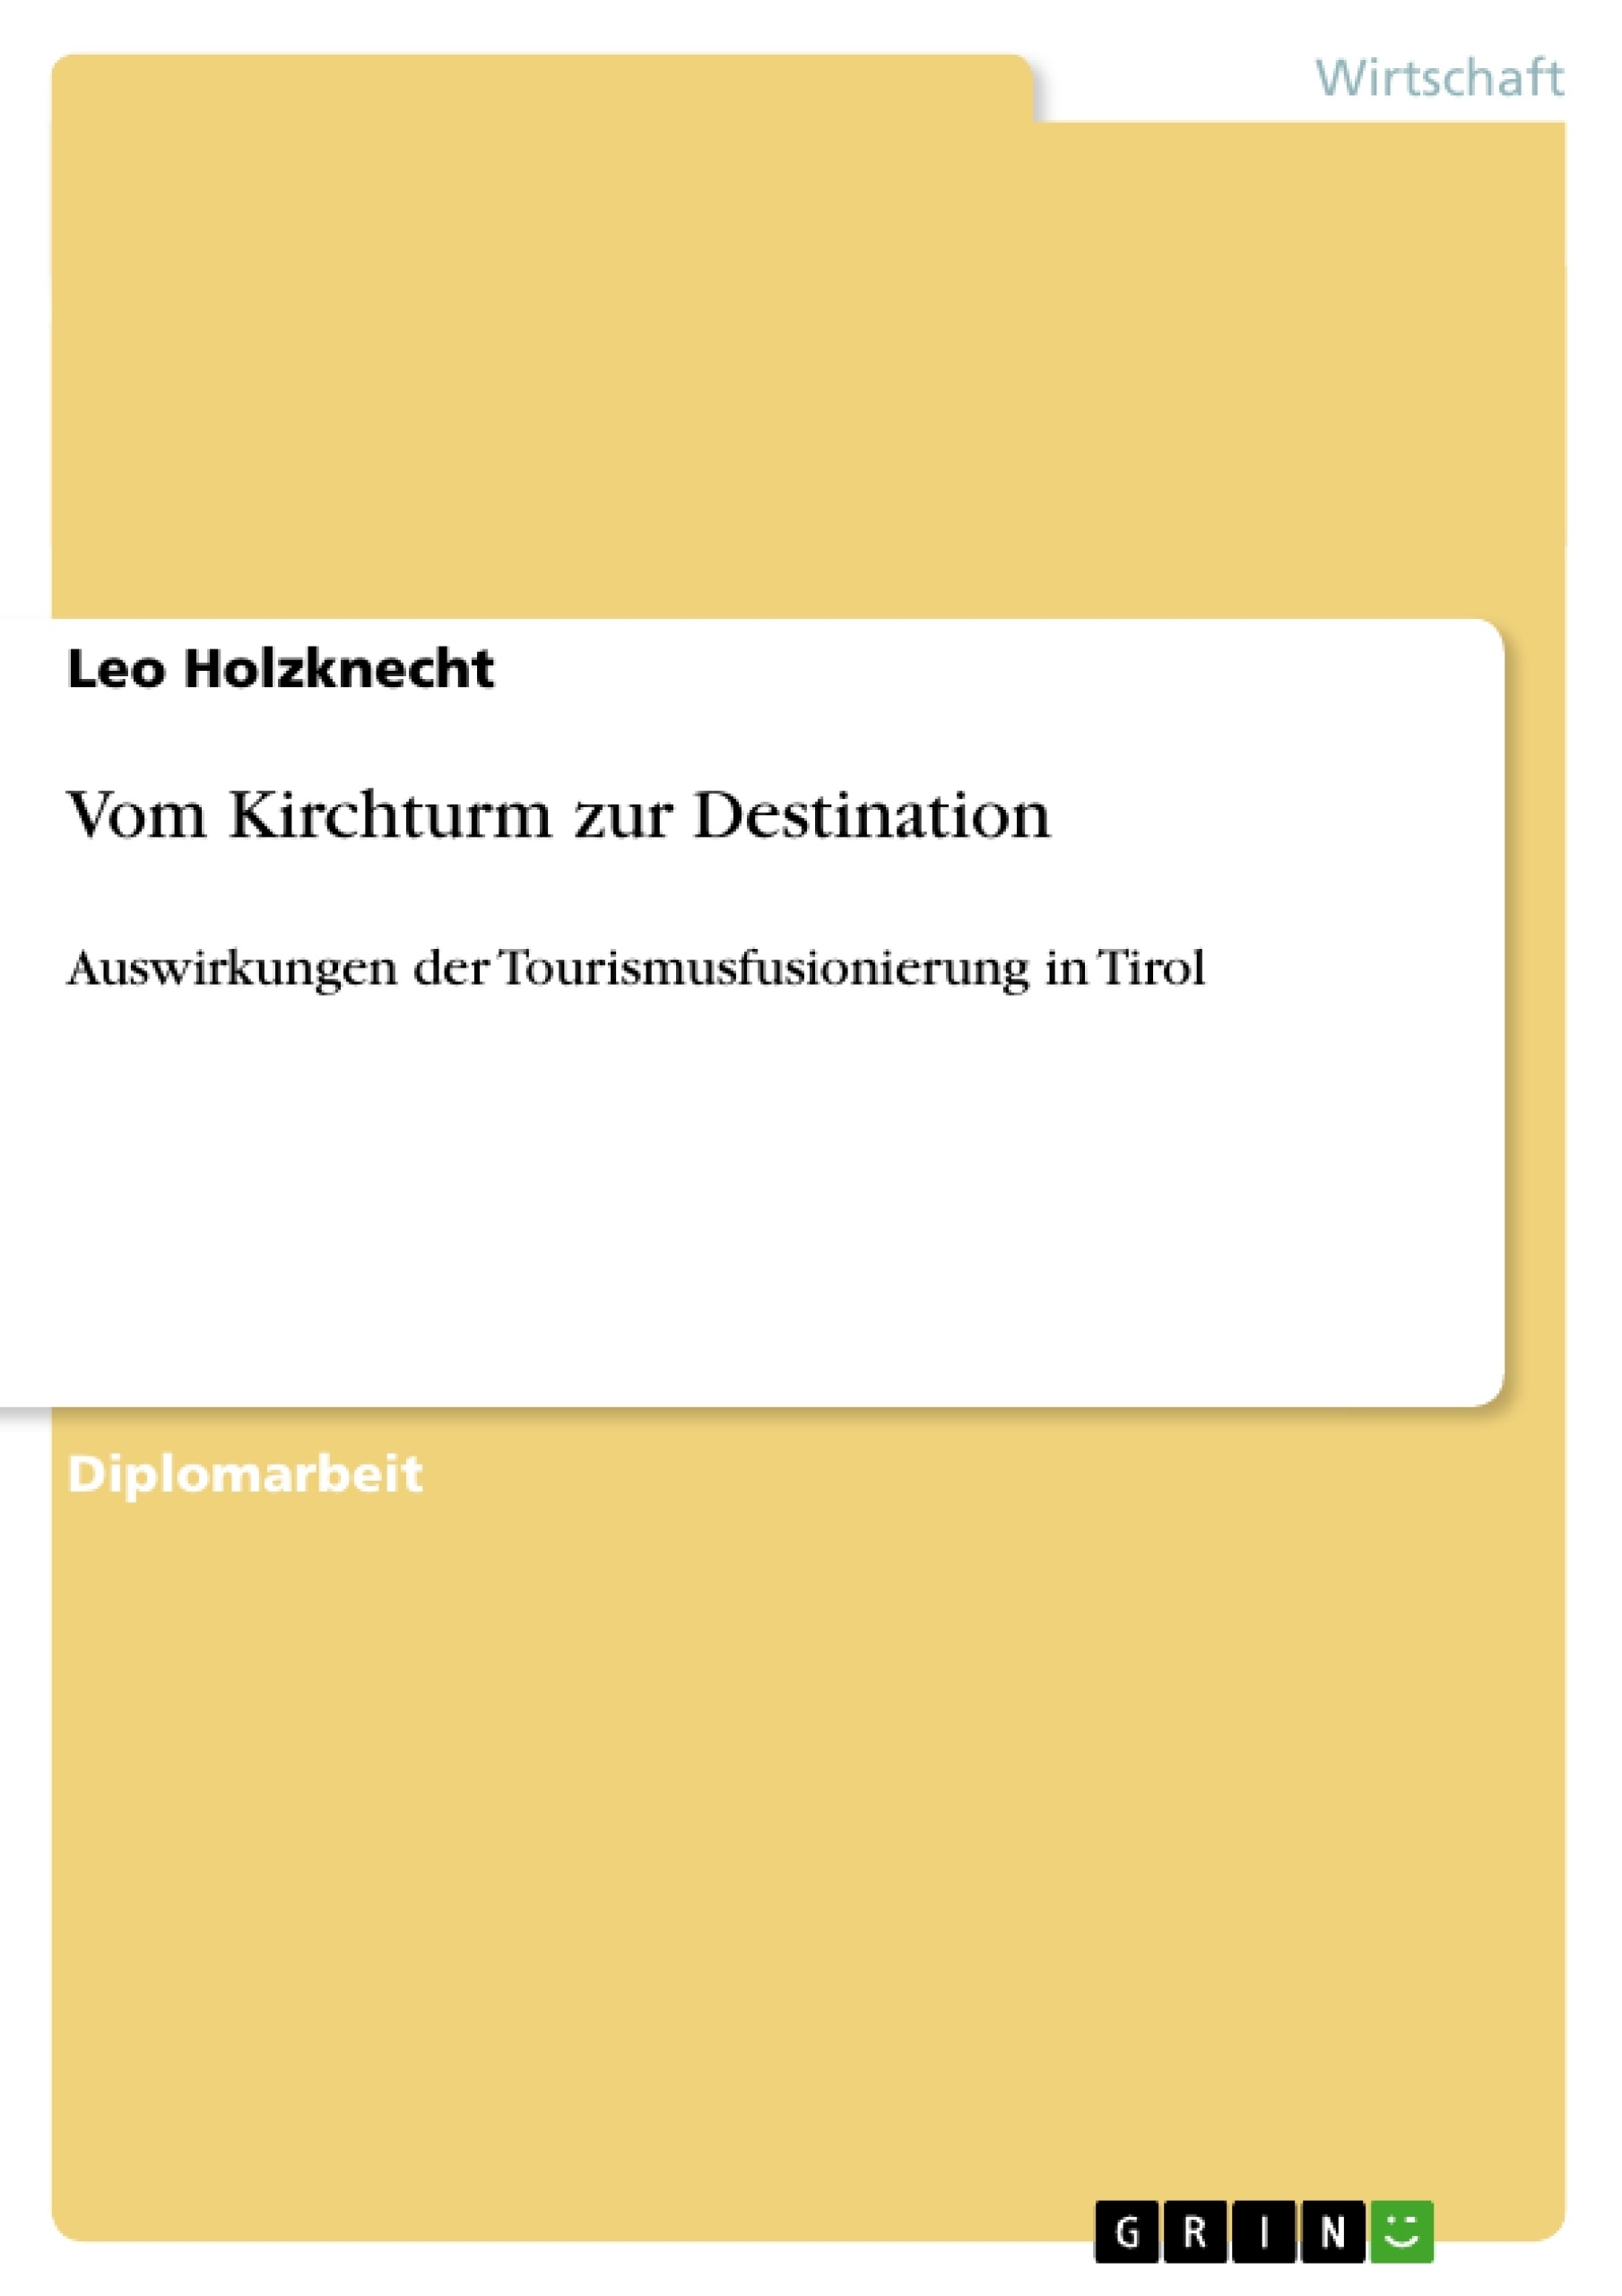 Titre: Vom Kirchturm zur Destination